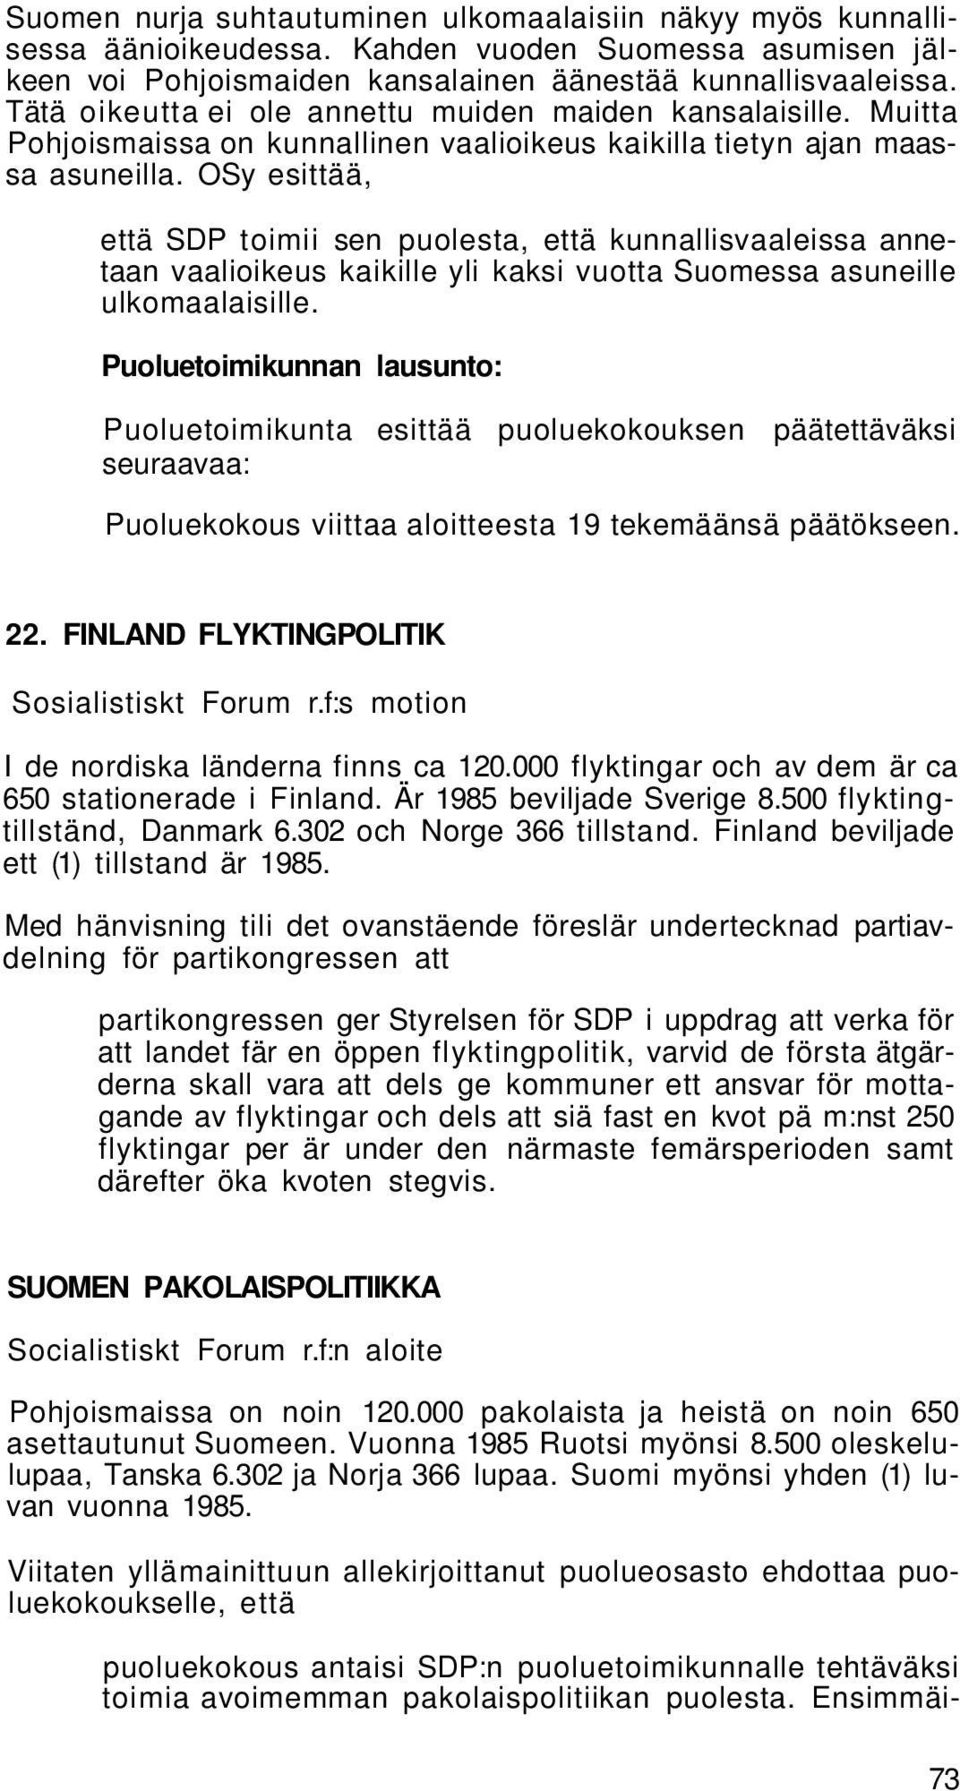 OSy esittää, että SDP toimii sen puolesta, että kunnallisvaaleissa annetaan vaalioikeus kaikille yli kaksi vuotta Suomessa asuneille ulkomaalaisille.